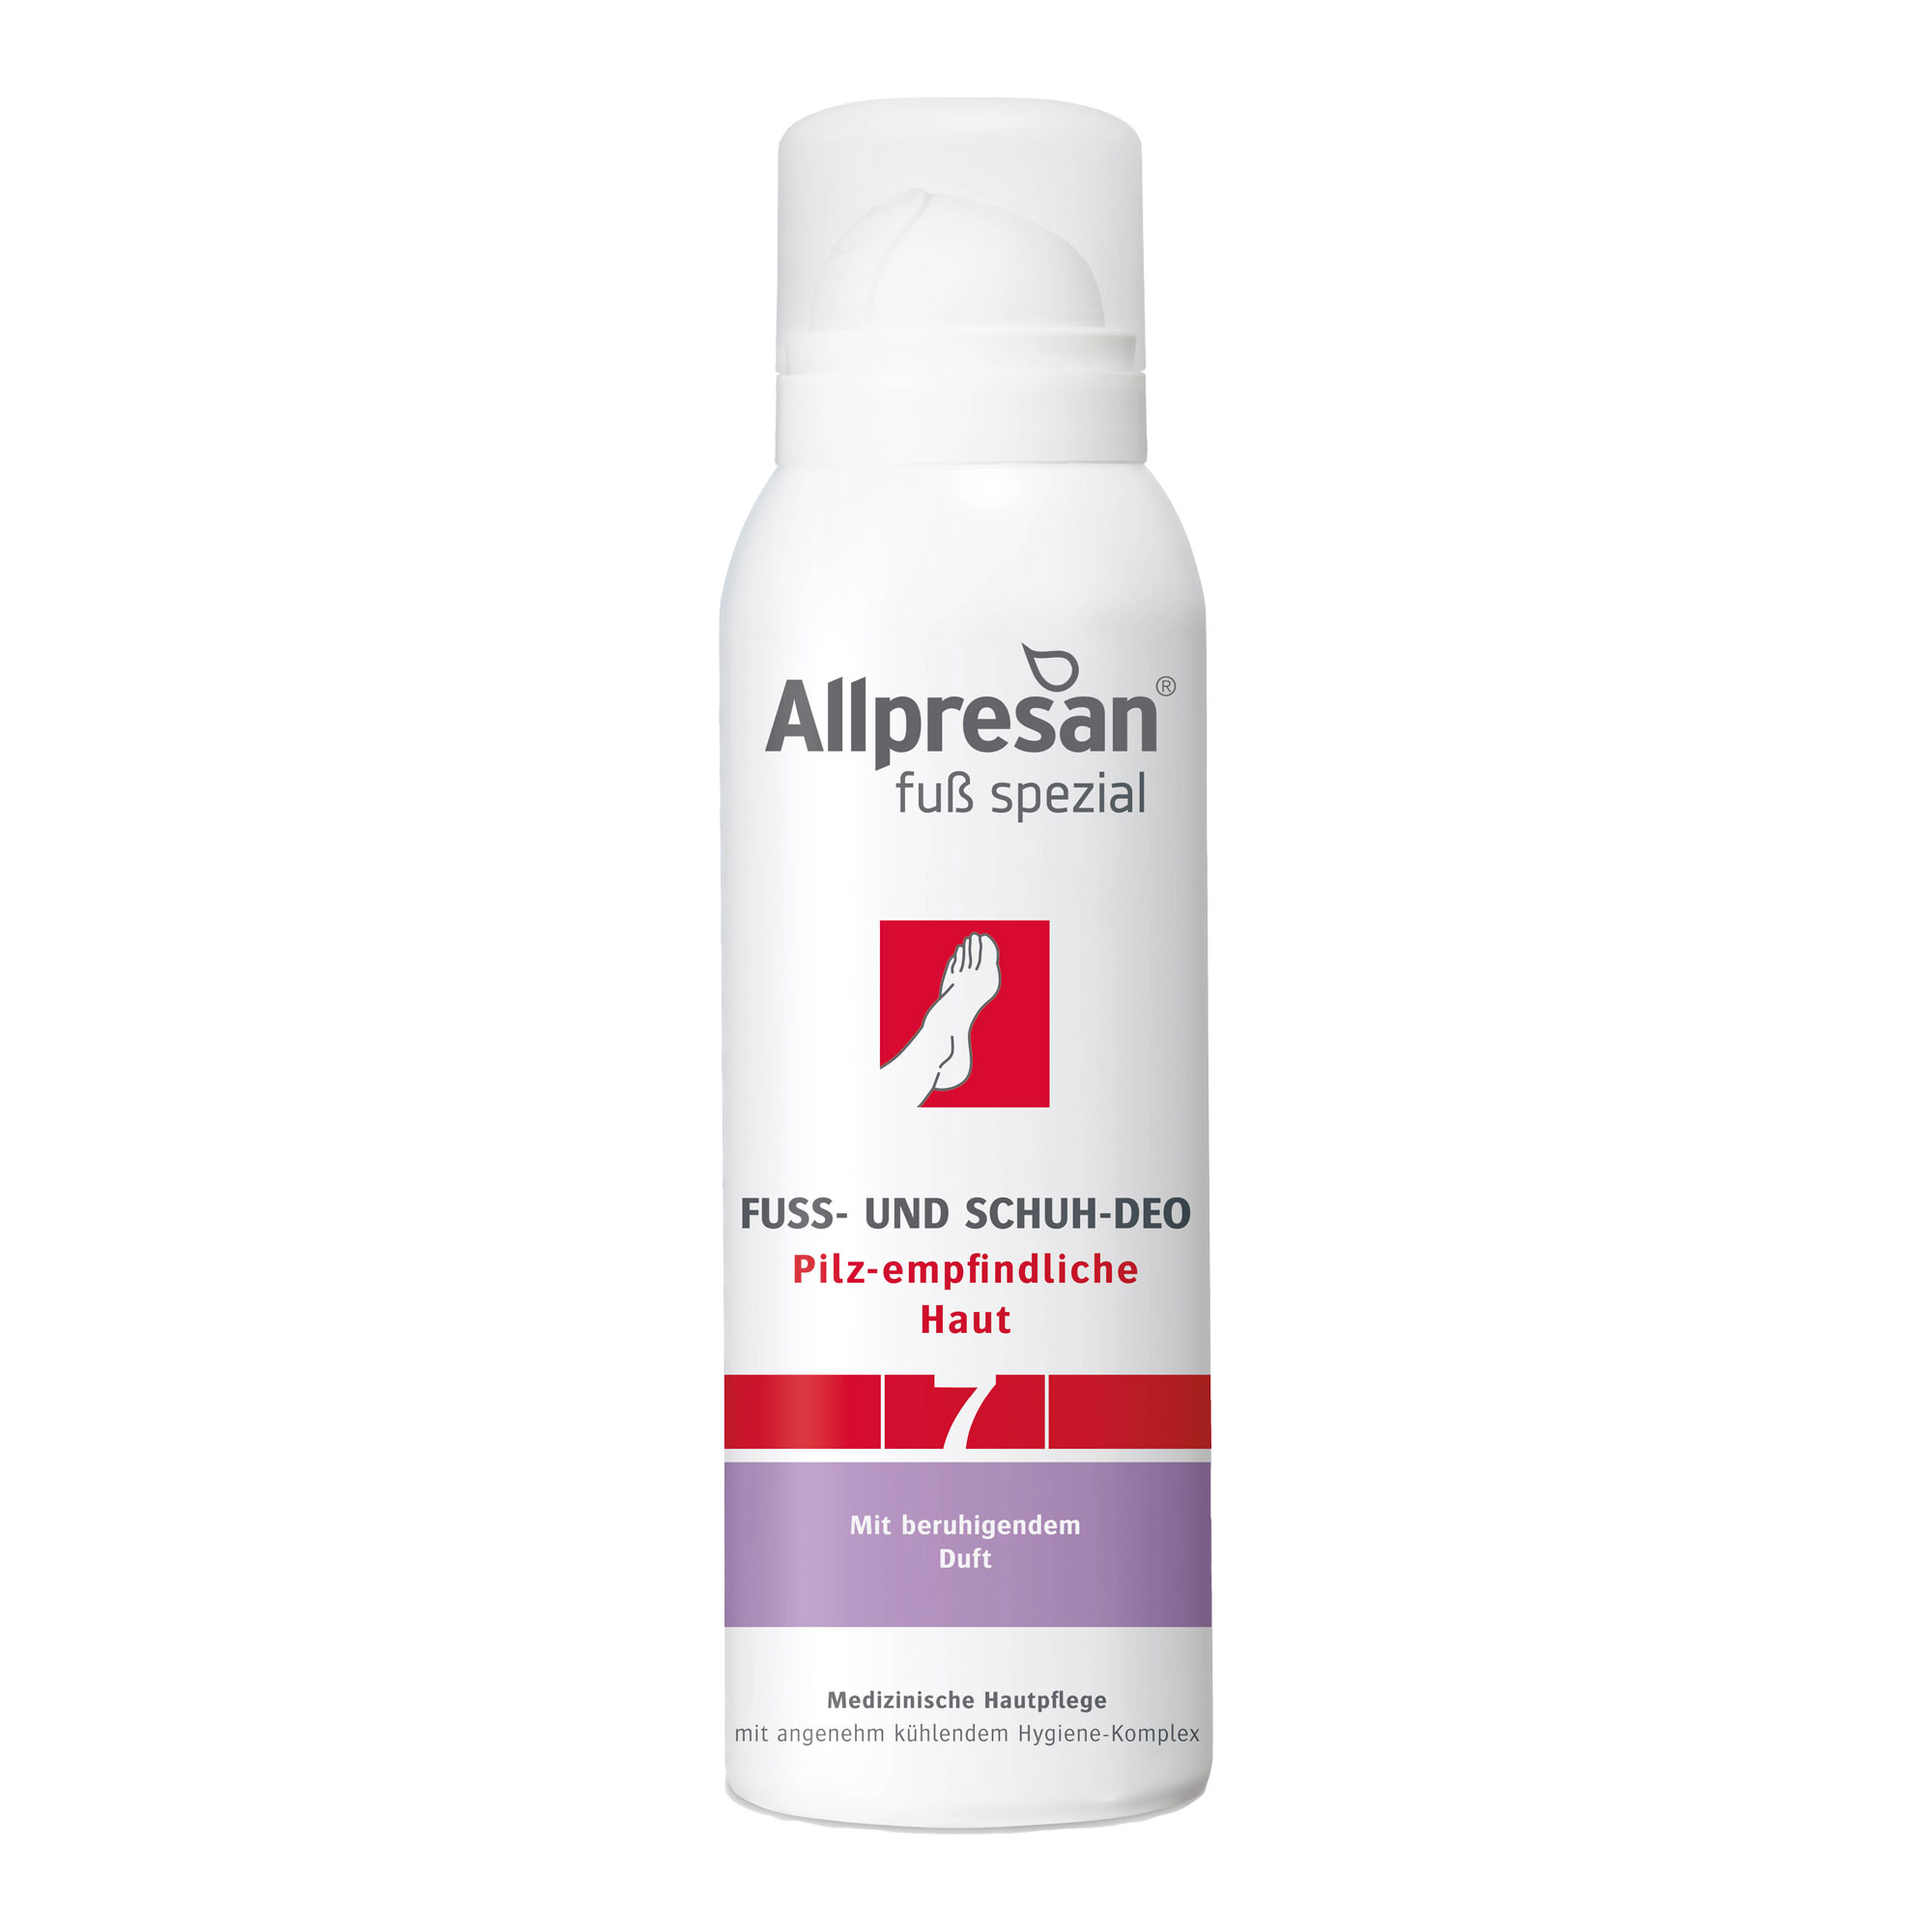 Antibakterielles Deodorant für pilz-empfindliche Füße mit kühlendem Effekt. Mit Piroctone Olamine und beruhigendem Duft.